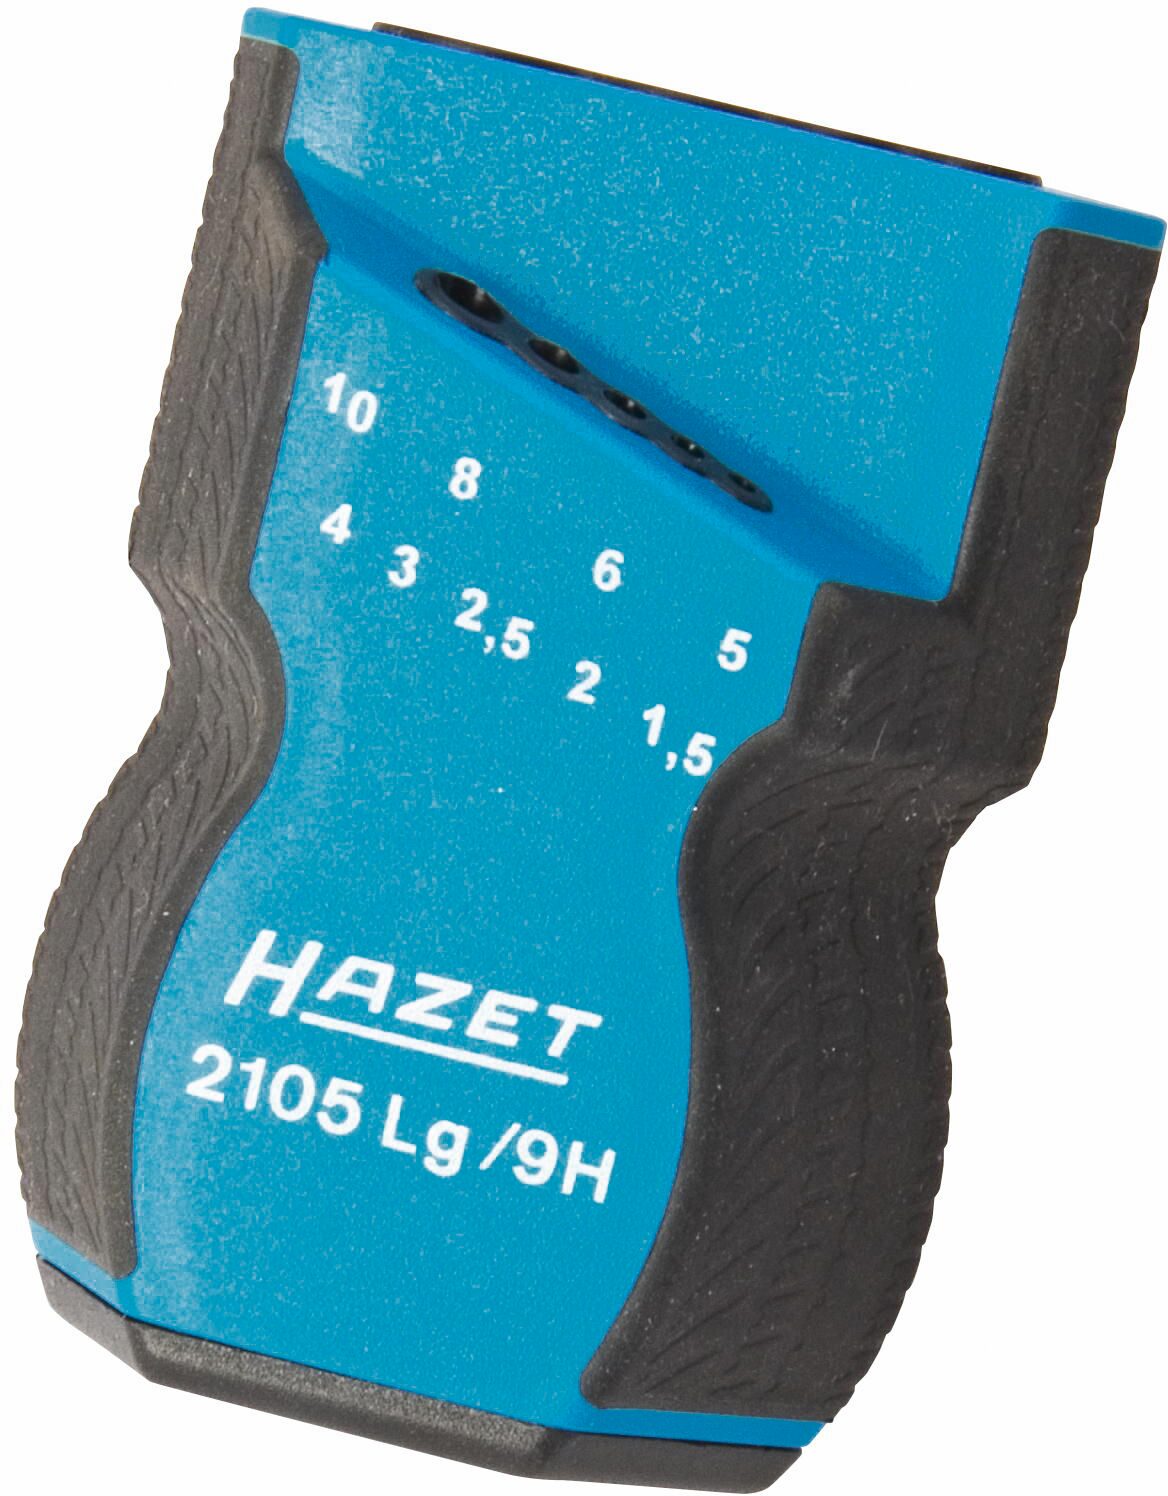 HAZET Kunststoff-Halter · leer 2105LG/9HL